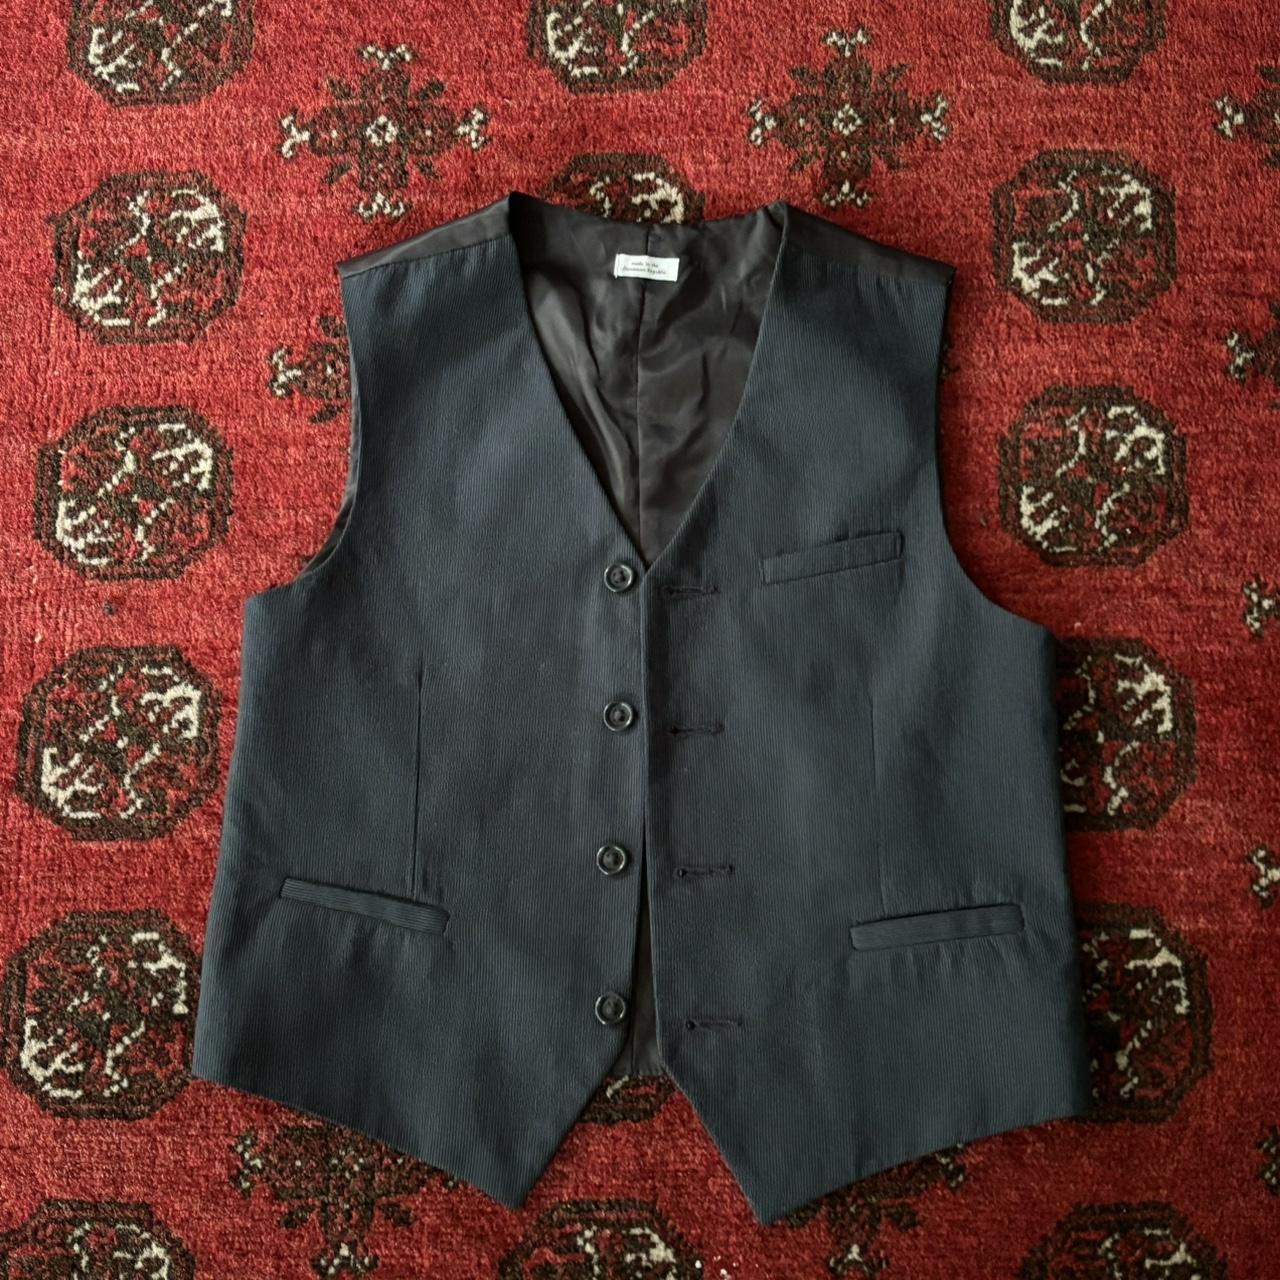 Calvin Klein suit vest top 🤩 - Big Kids M (10/12)... - Depop